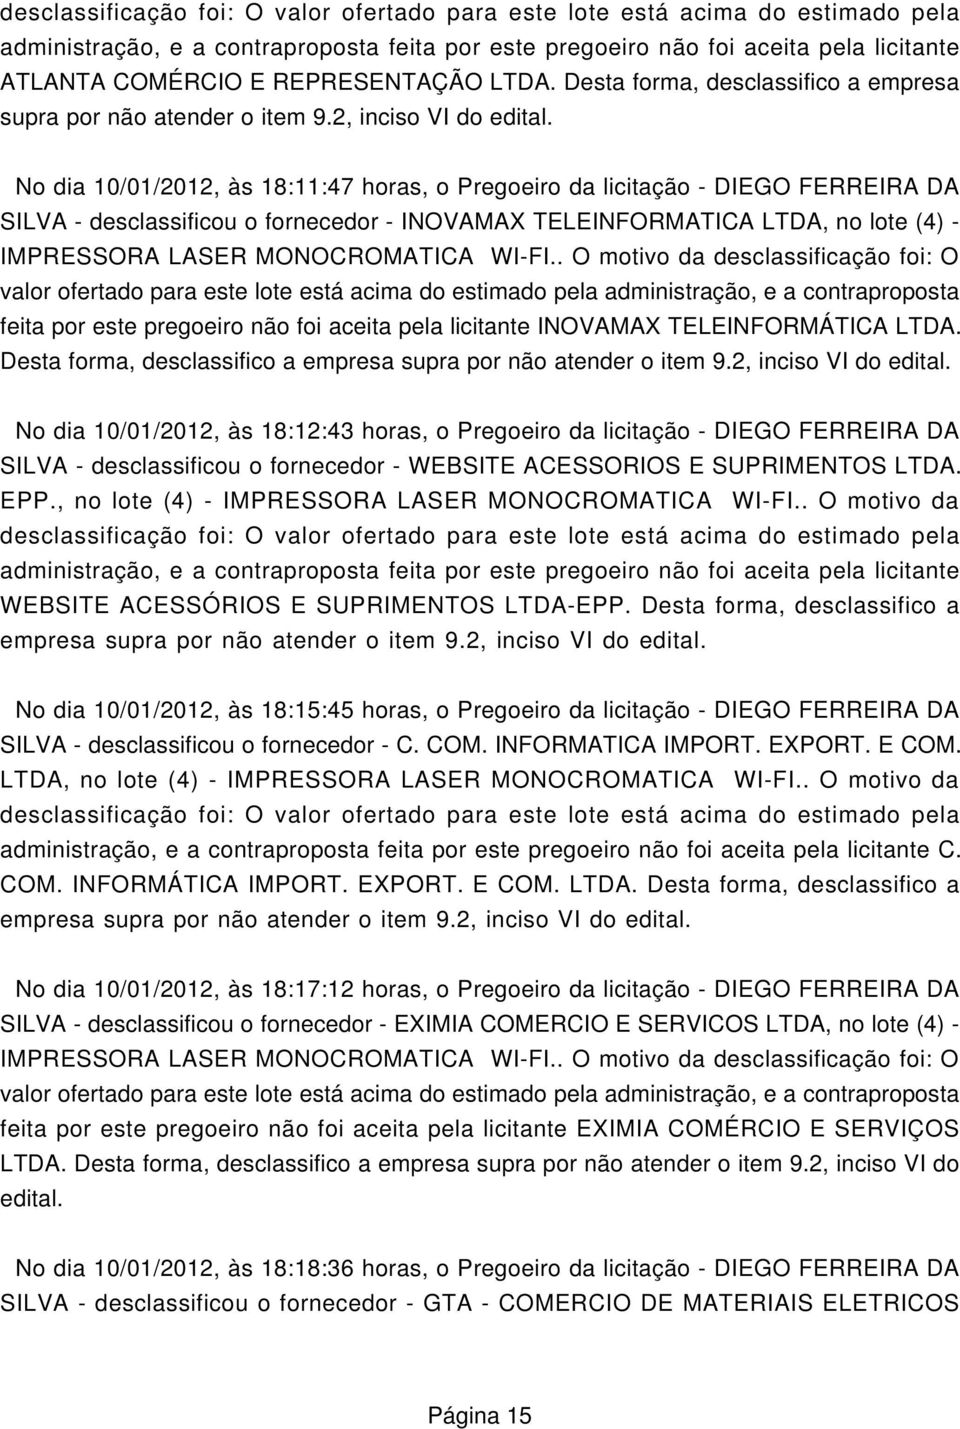 No dia 10/01/2012, às 18:11:47 horas, o Pregoeiro da licitação - DIEGO FERREIRA DA SILVA - desclassificou o fornecedor - INOVAMAX TELEINFORMATICA LTDA, no lote (4) - IMPRESSORA LASER MONOCROMATICA